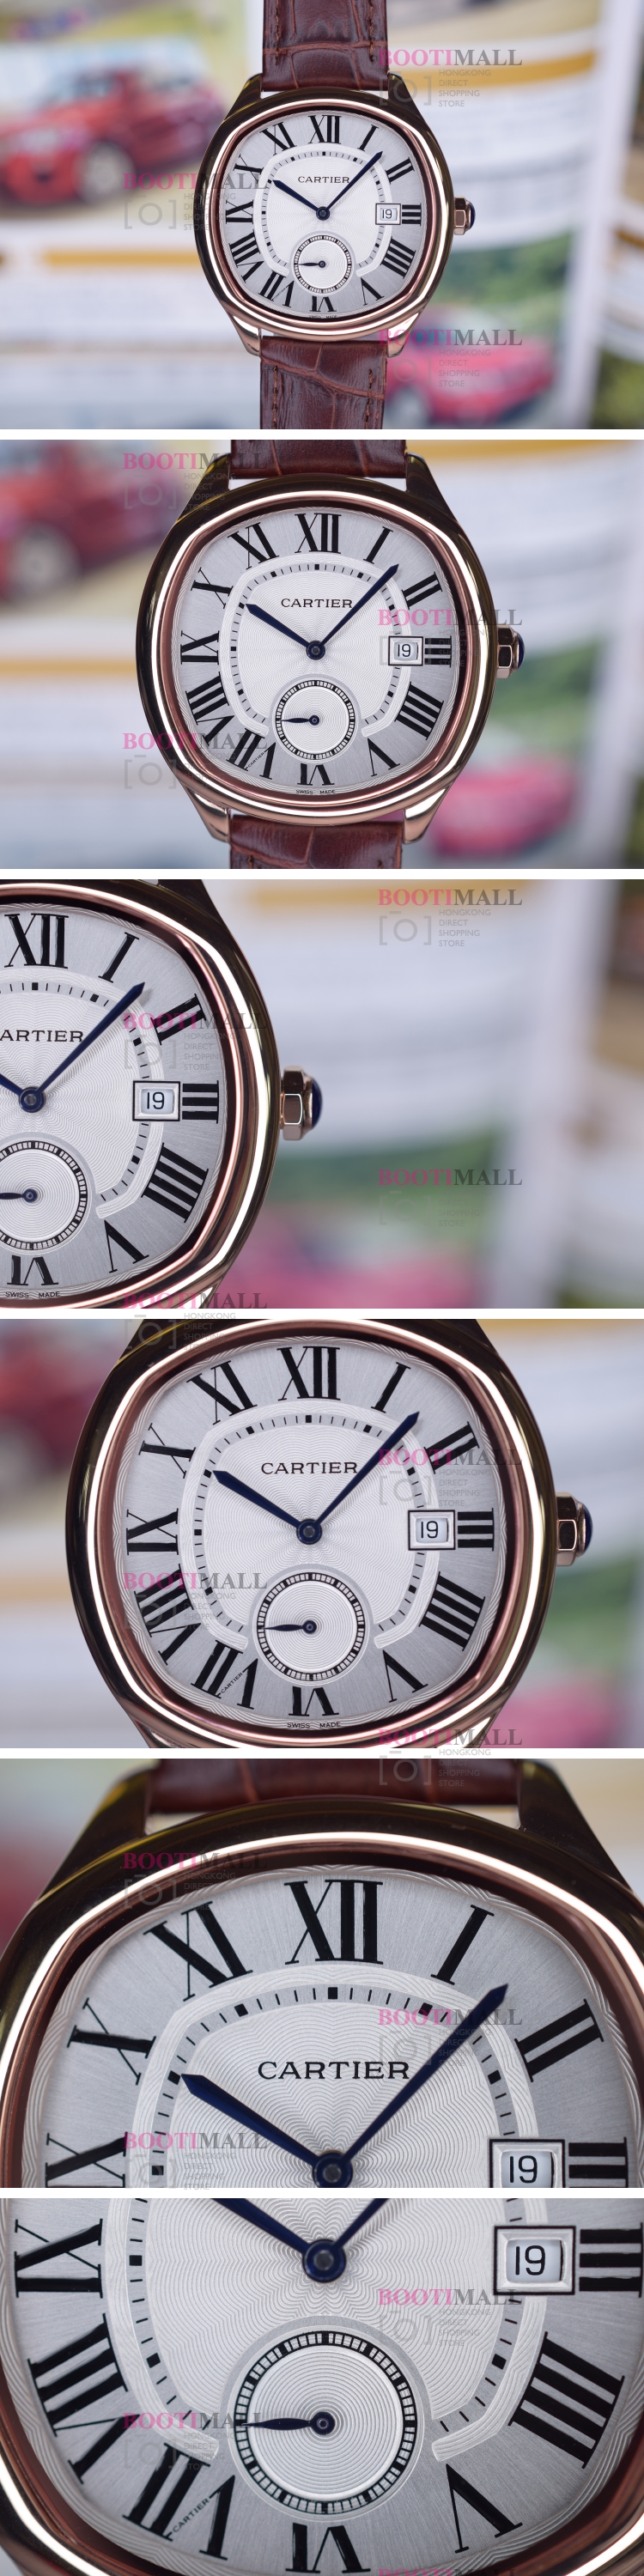 de Watch 까르띠에 Cartier